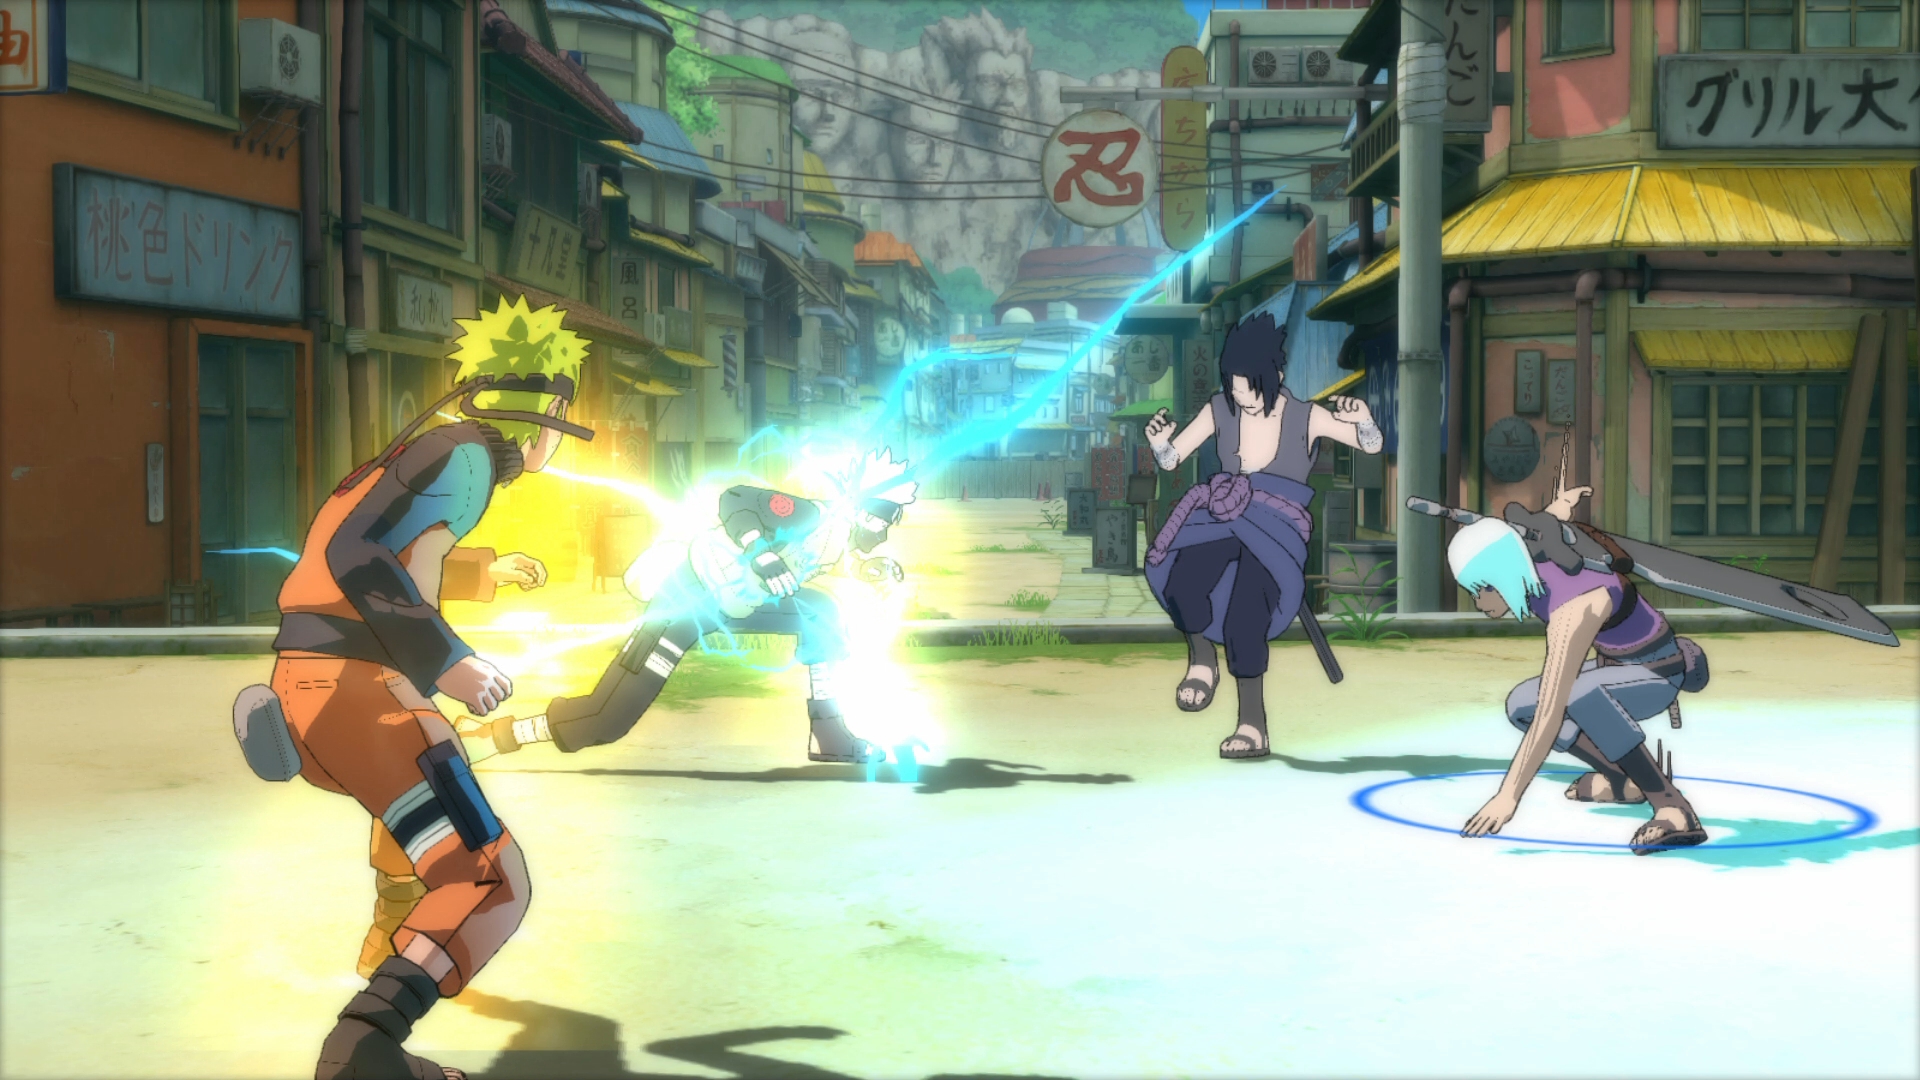 Naruto Shippuden: Ultimate Ninja Storm Trilogy - Le poids révélé, ainsi que  la taille des jeux à l'unité 